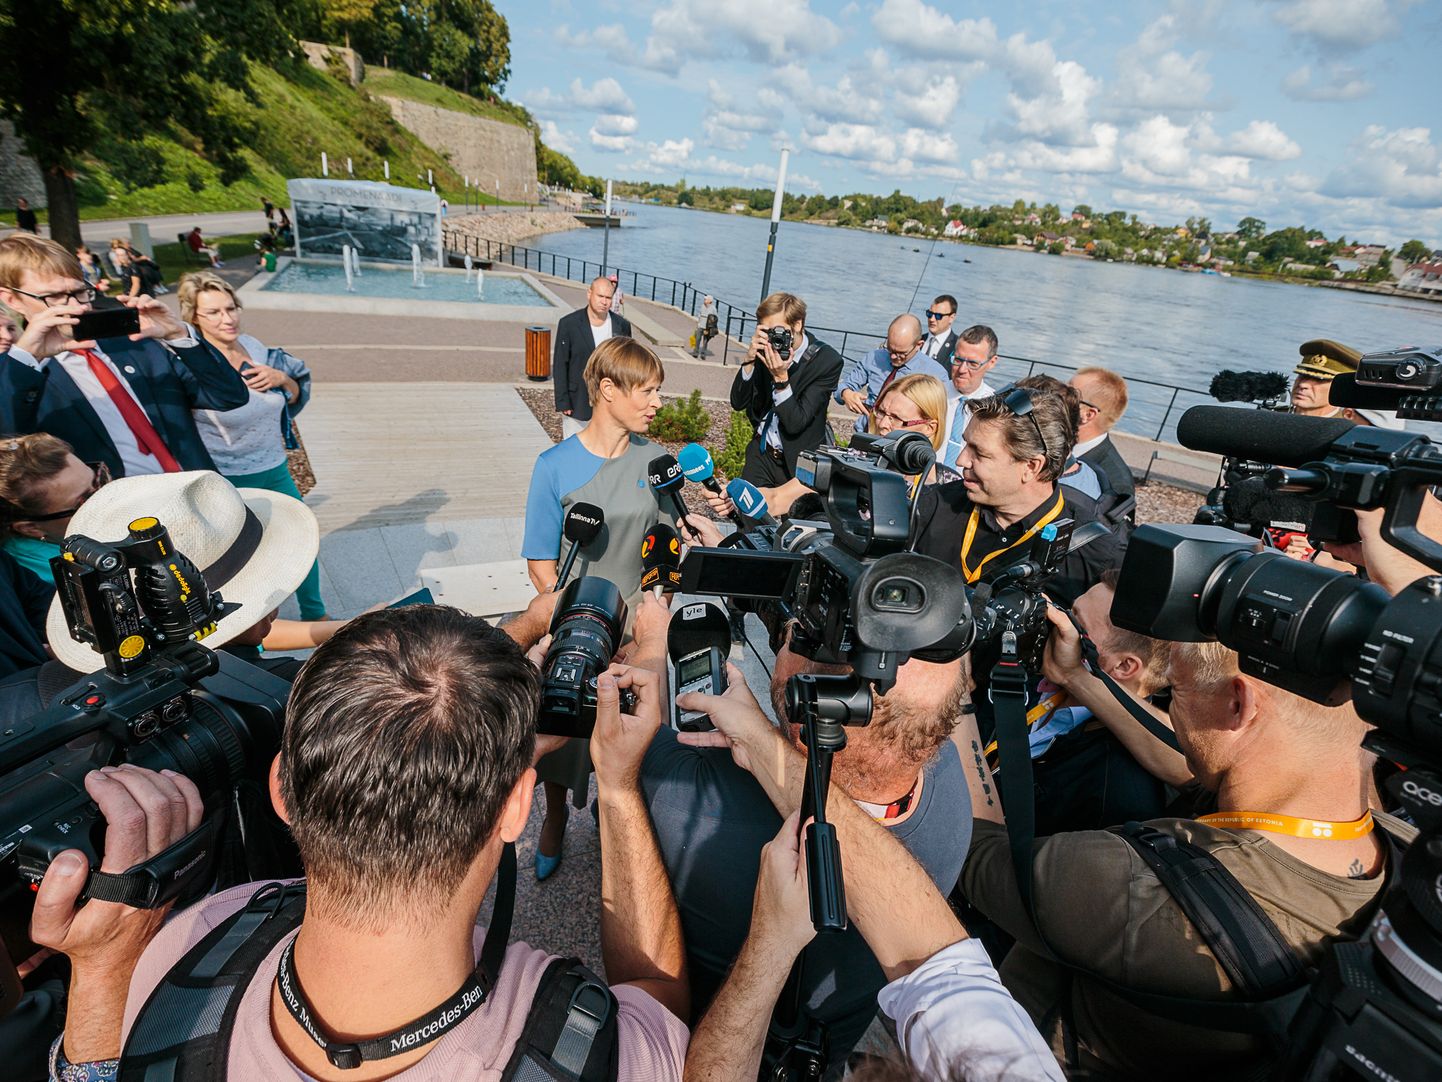 Augustis oma esimest töönädalat Ida-Virumaal alustanud president Kersti Kaljulaid on Narva jõepromenaadil ajakirjanike piiramisrõngas. Presidendi sõnumid ja pikem kohalolek Ida-Virumaal tõid ohtralt positiivset tähelepanu kogu maakonnale.